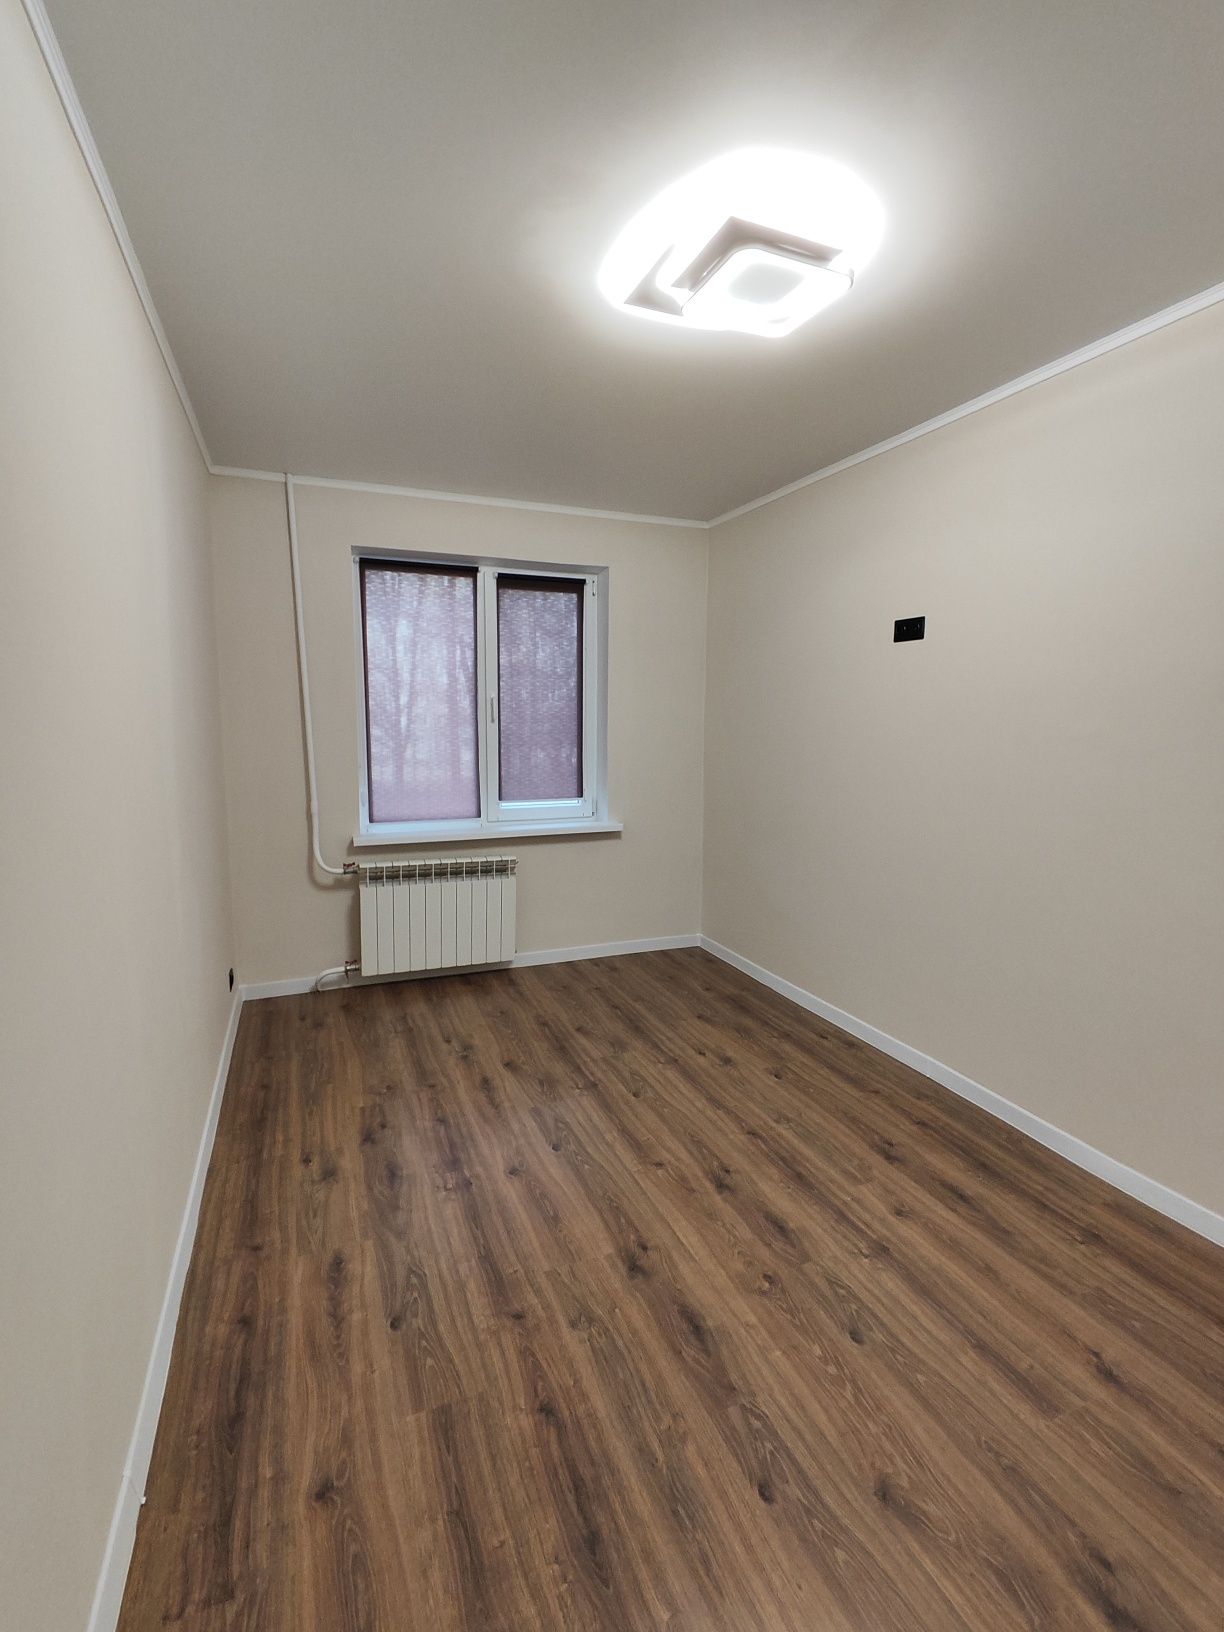 Продам 2-х комнатную квартиру с новым капитальным ремонтом на Ашане.